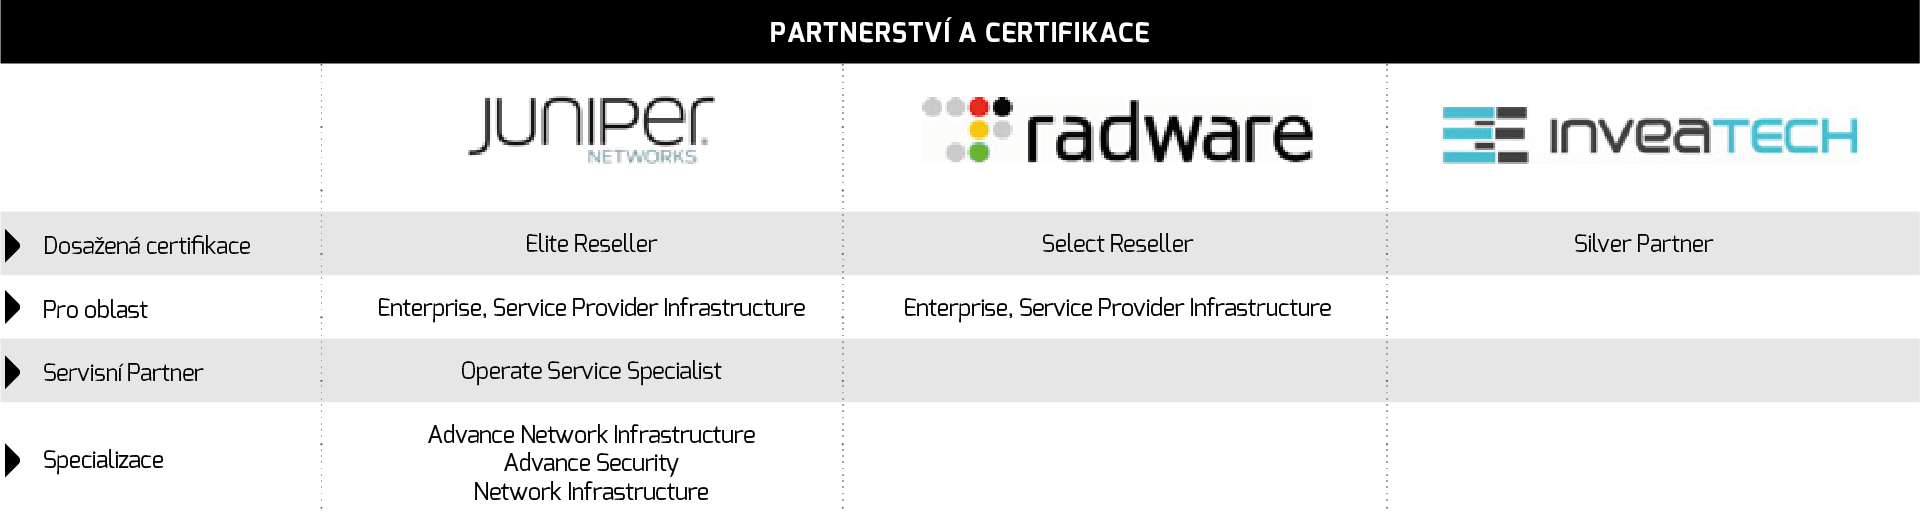 ComSource partnerství a kompetence Základní partnerství Další partnersví DELL (Networking - Force10, PowerConnect, SonicWall ) Citrix (Networking - ADC, WAF,